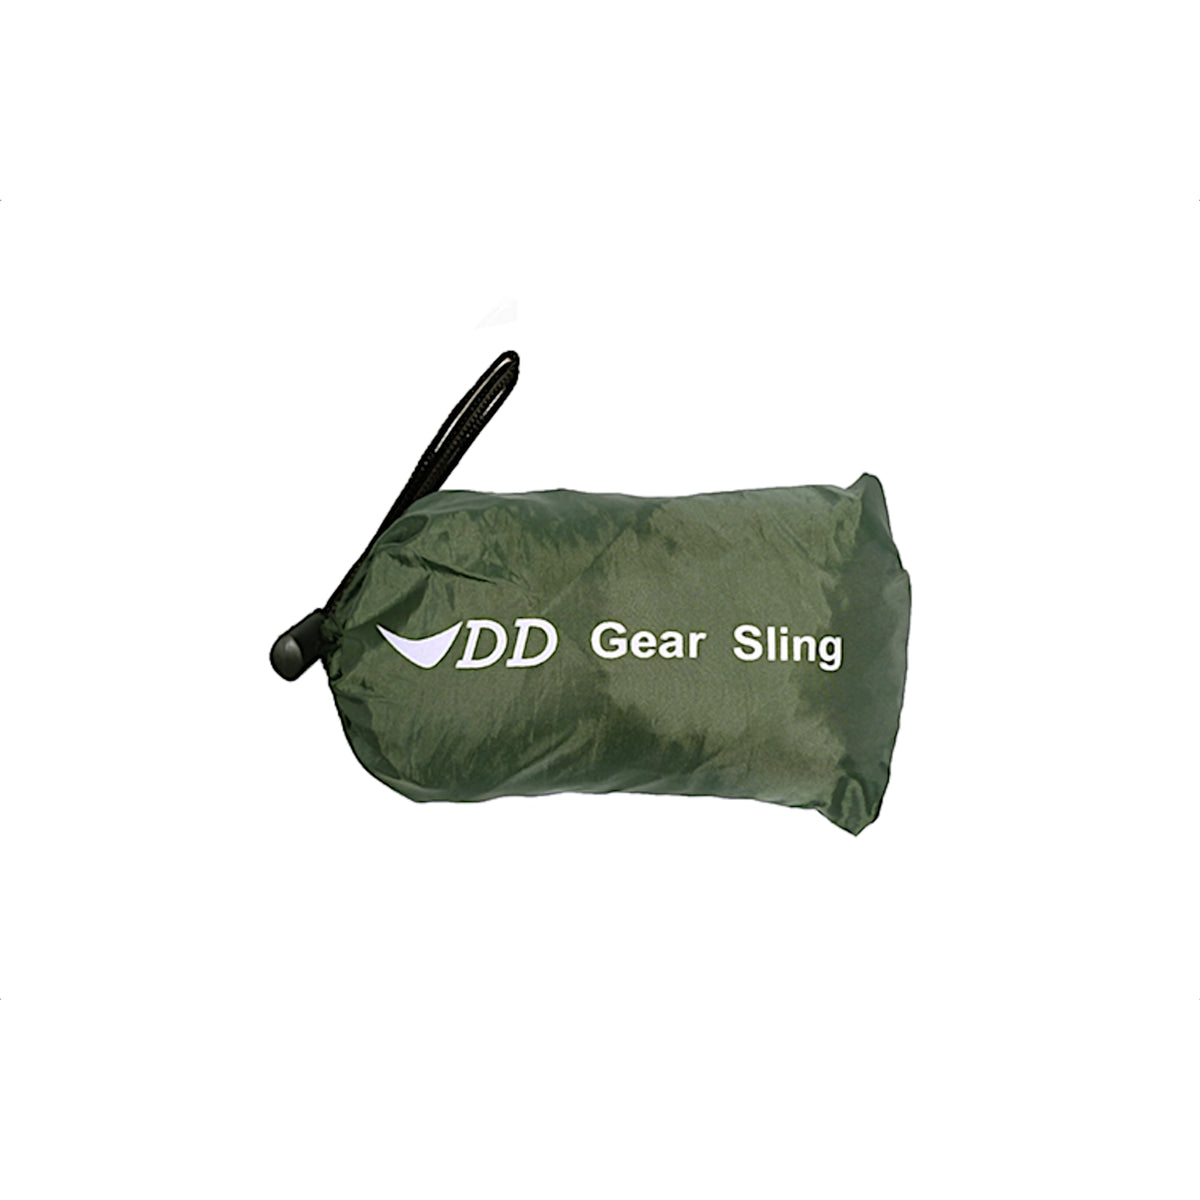 custodia del dd gear sling